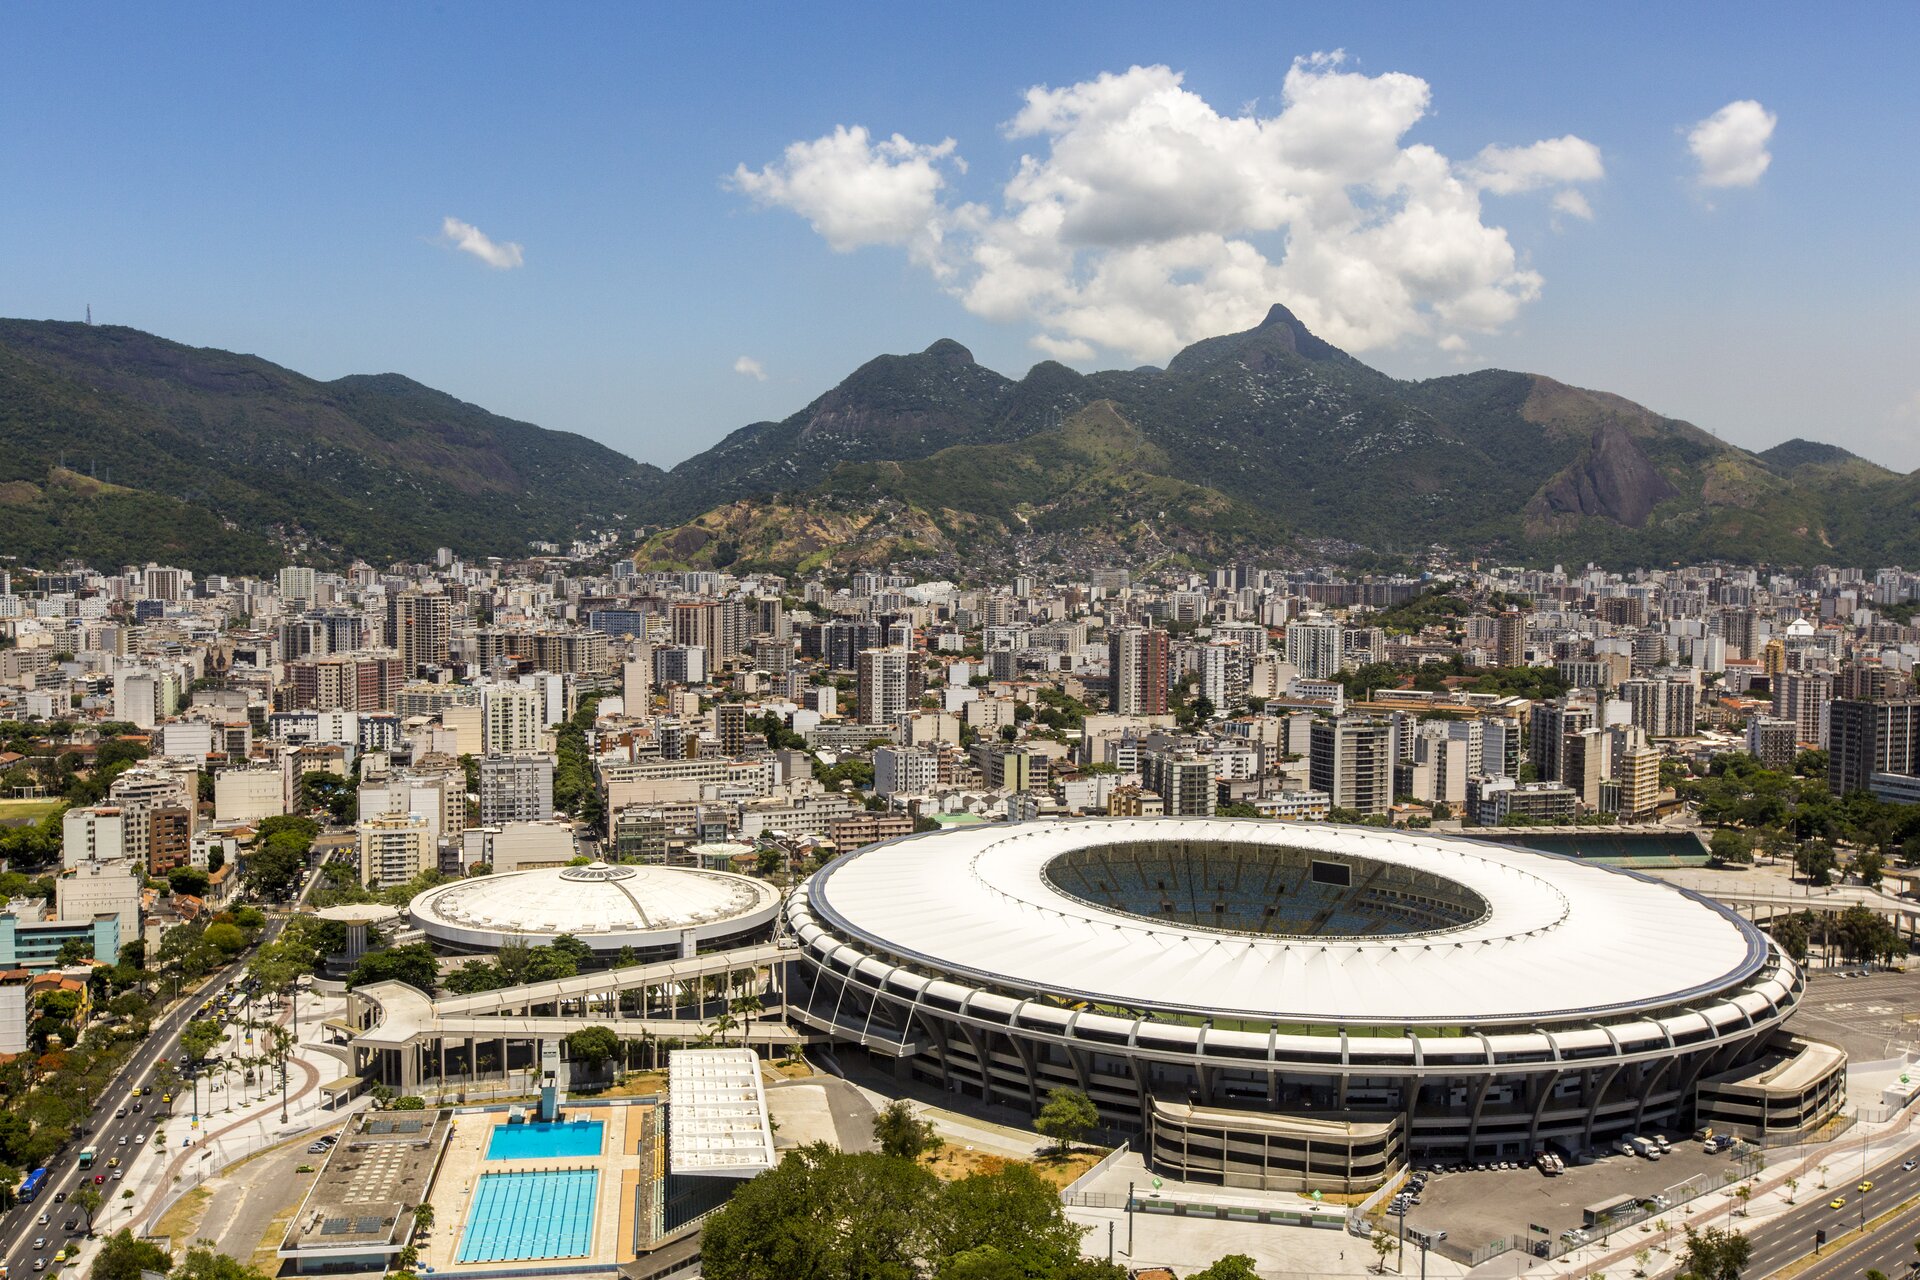 Na zdjęciu miasto u stóp gór, nowoczesne wysokie budynki, na pierwszym planie kompleks zabudowań sportowych z okrągłym stadionem i basenami.